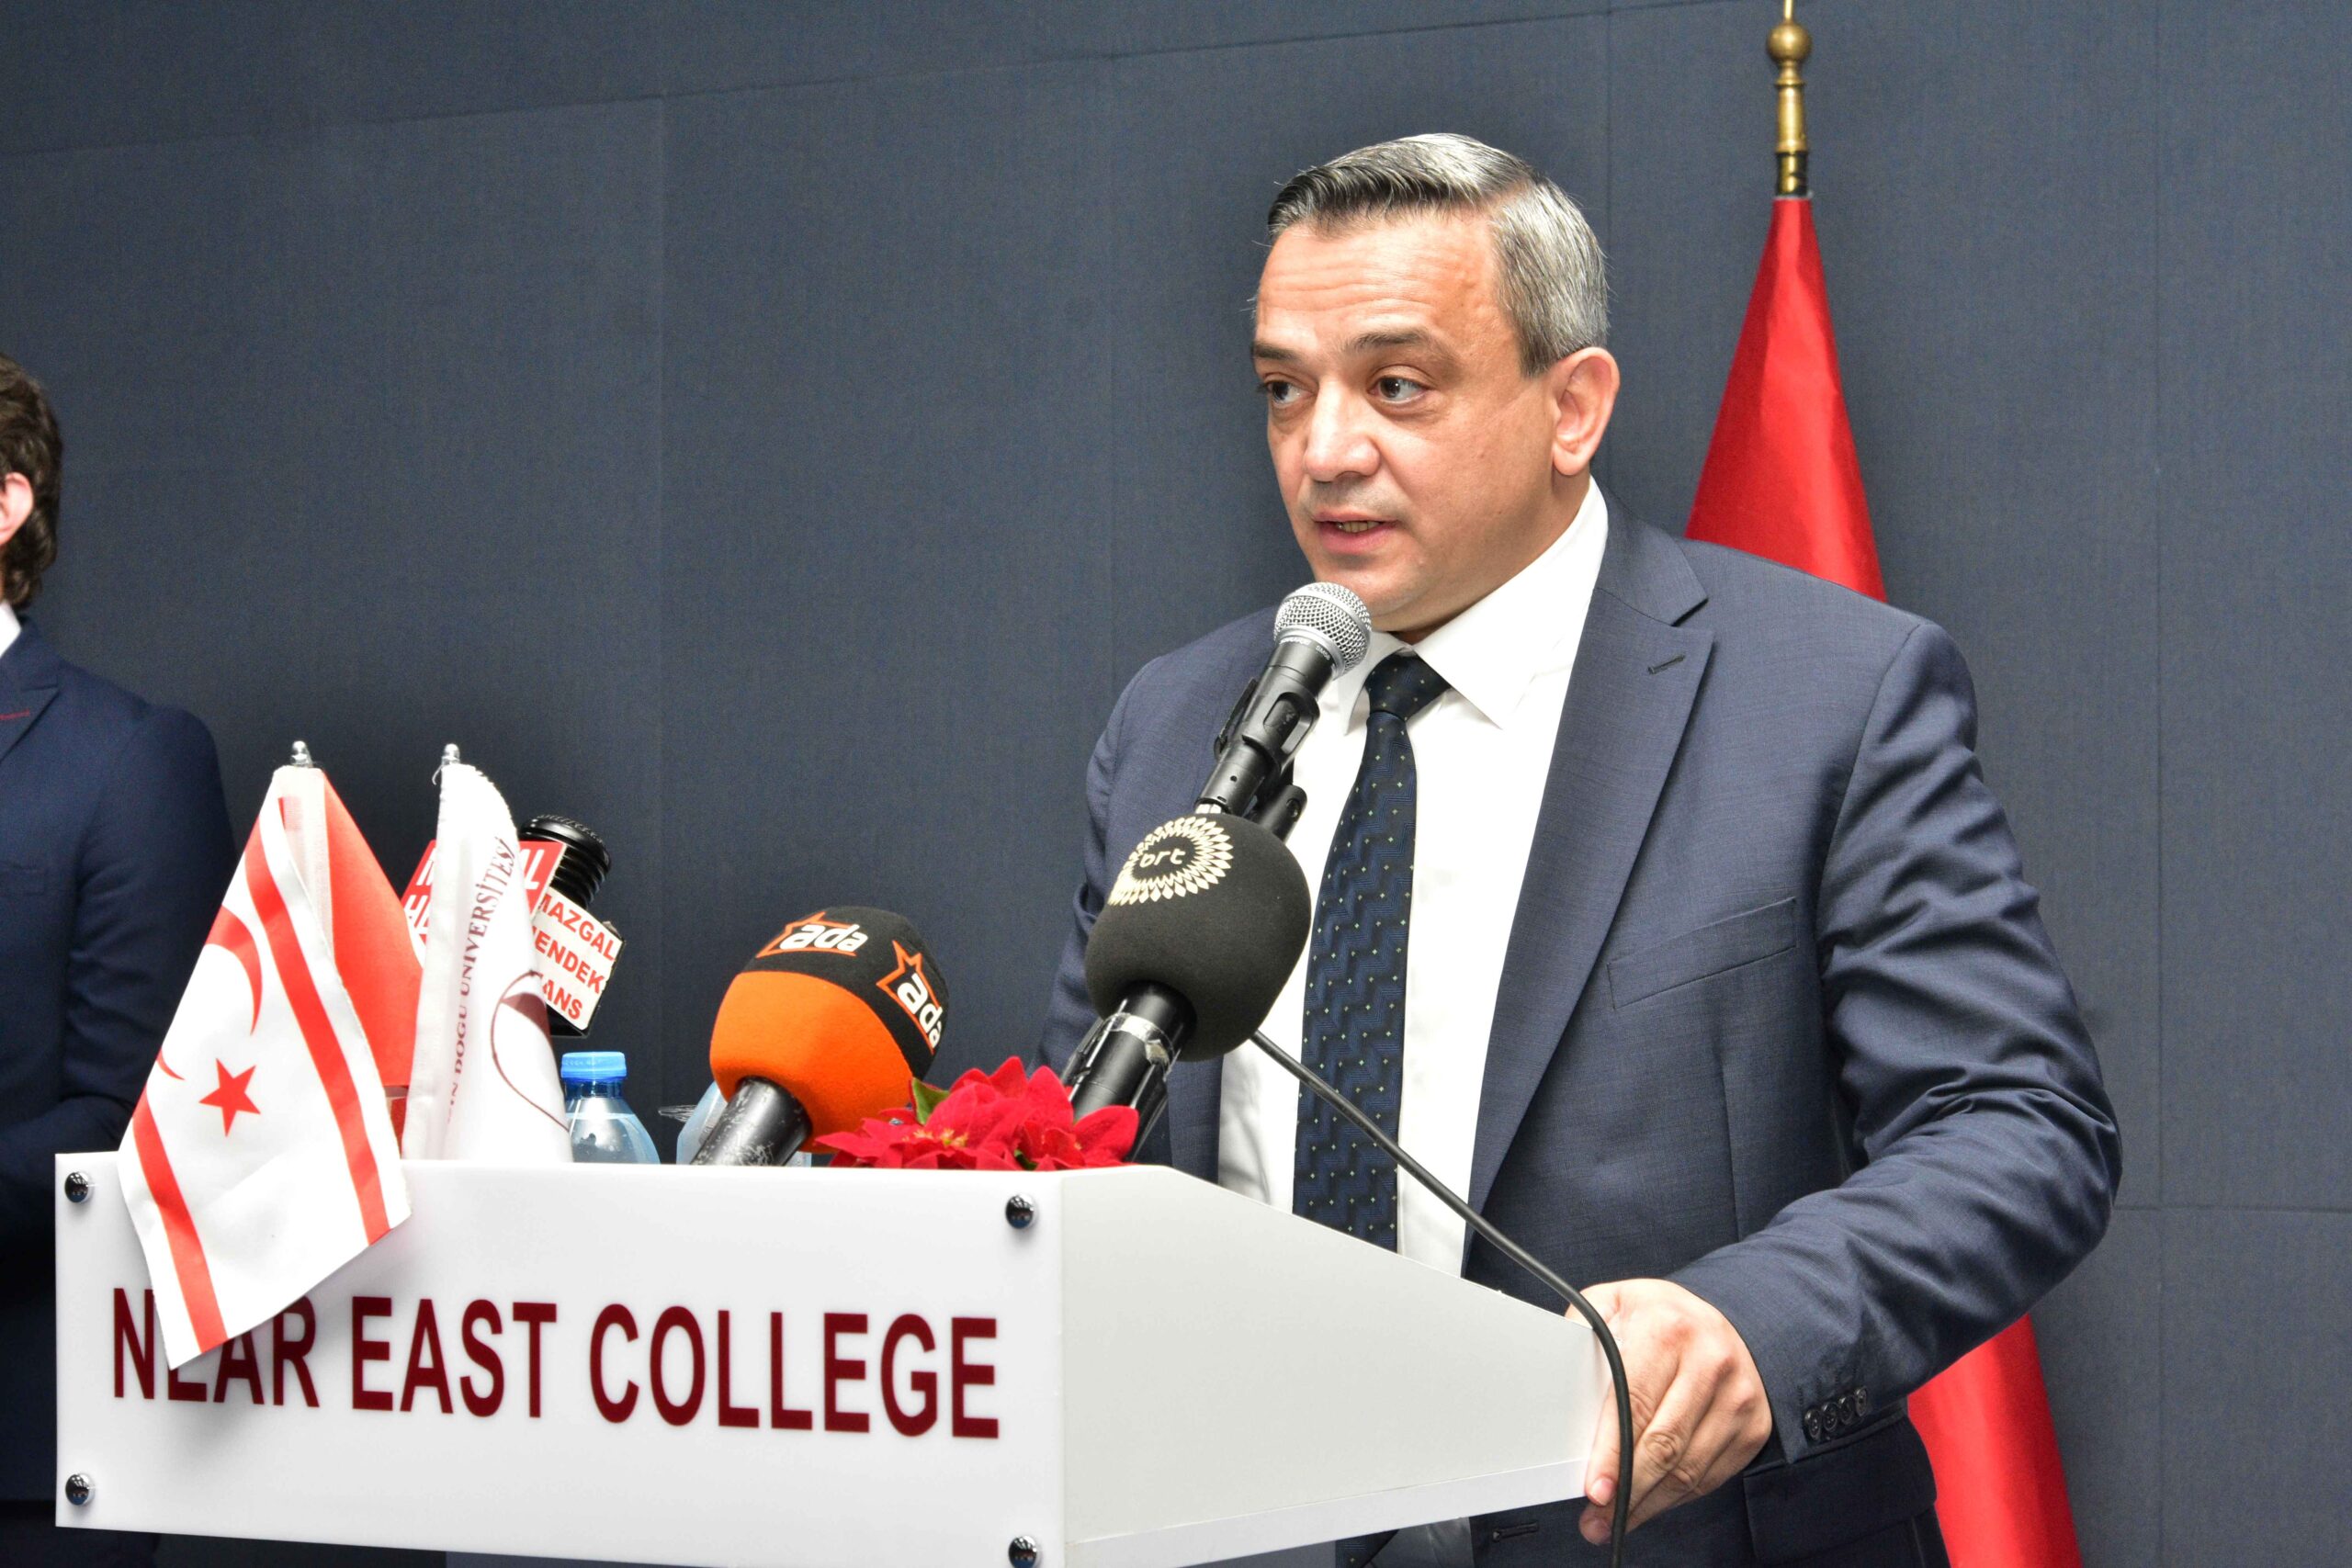 Dr. Suat Günsel Girne Koleji, Kreş ve Okul Öncesi Eğitimine Şubat 2021’de Başlayacak. Kolejin, İlkokul, Ortaokul ve Lise kısımları ise Eylül 2021’de Açılacak.